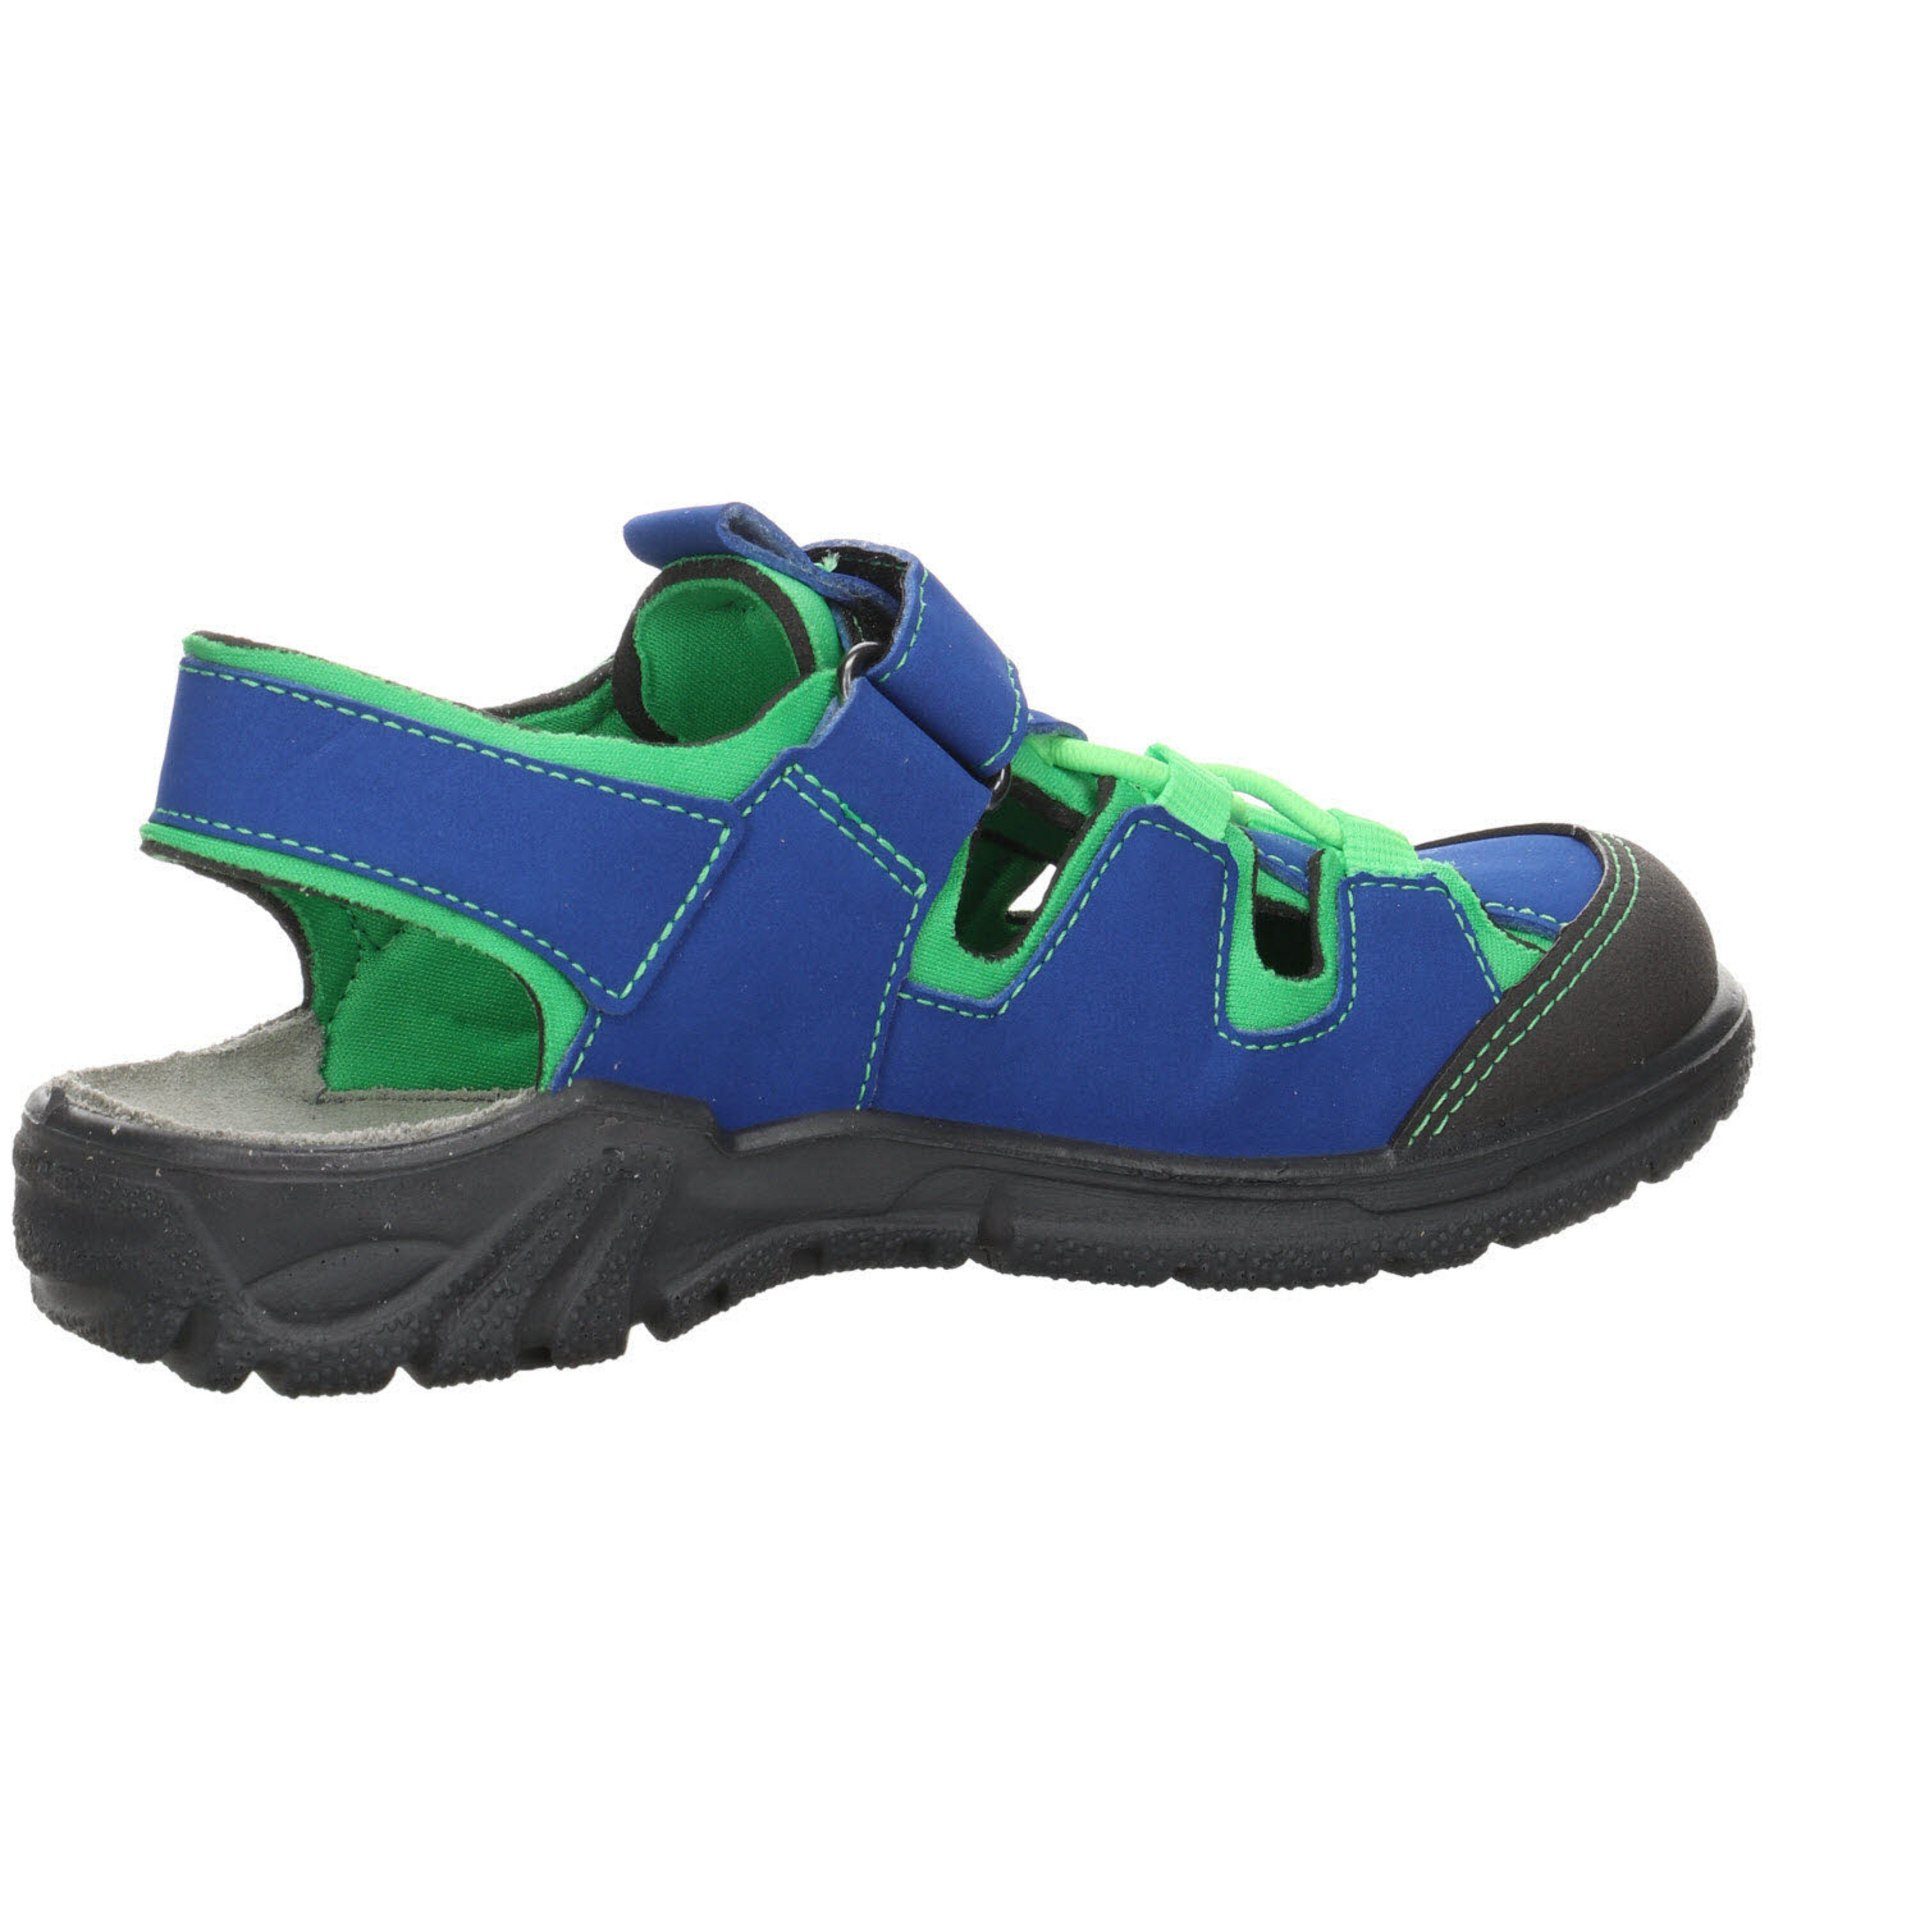 Sandalen blau Schuhe Synthetikkombination Gerald Sandale Outdoorsandale sonstige Ricosta Jungen Kombin